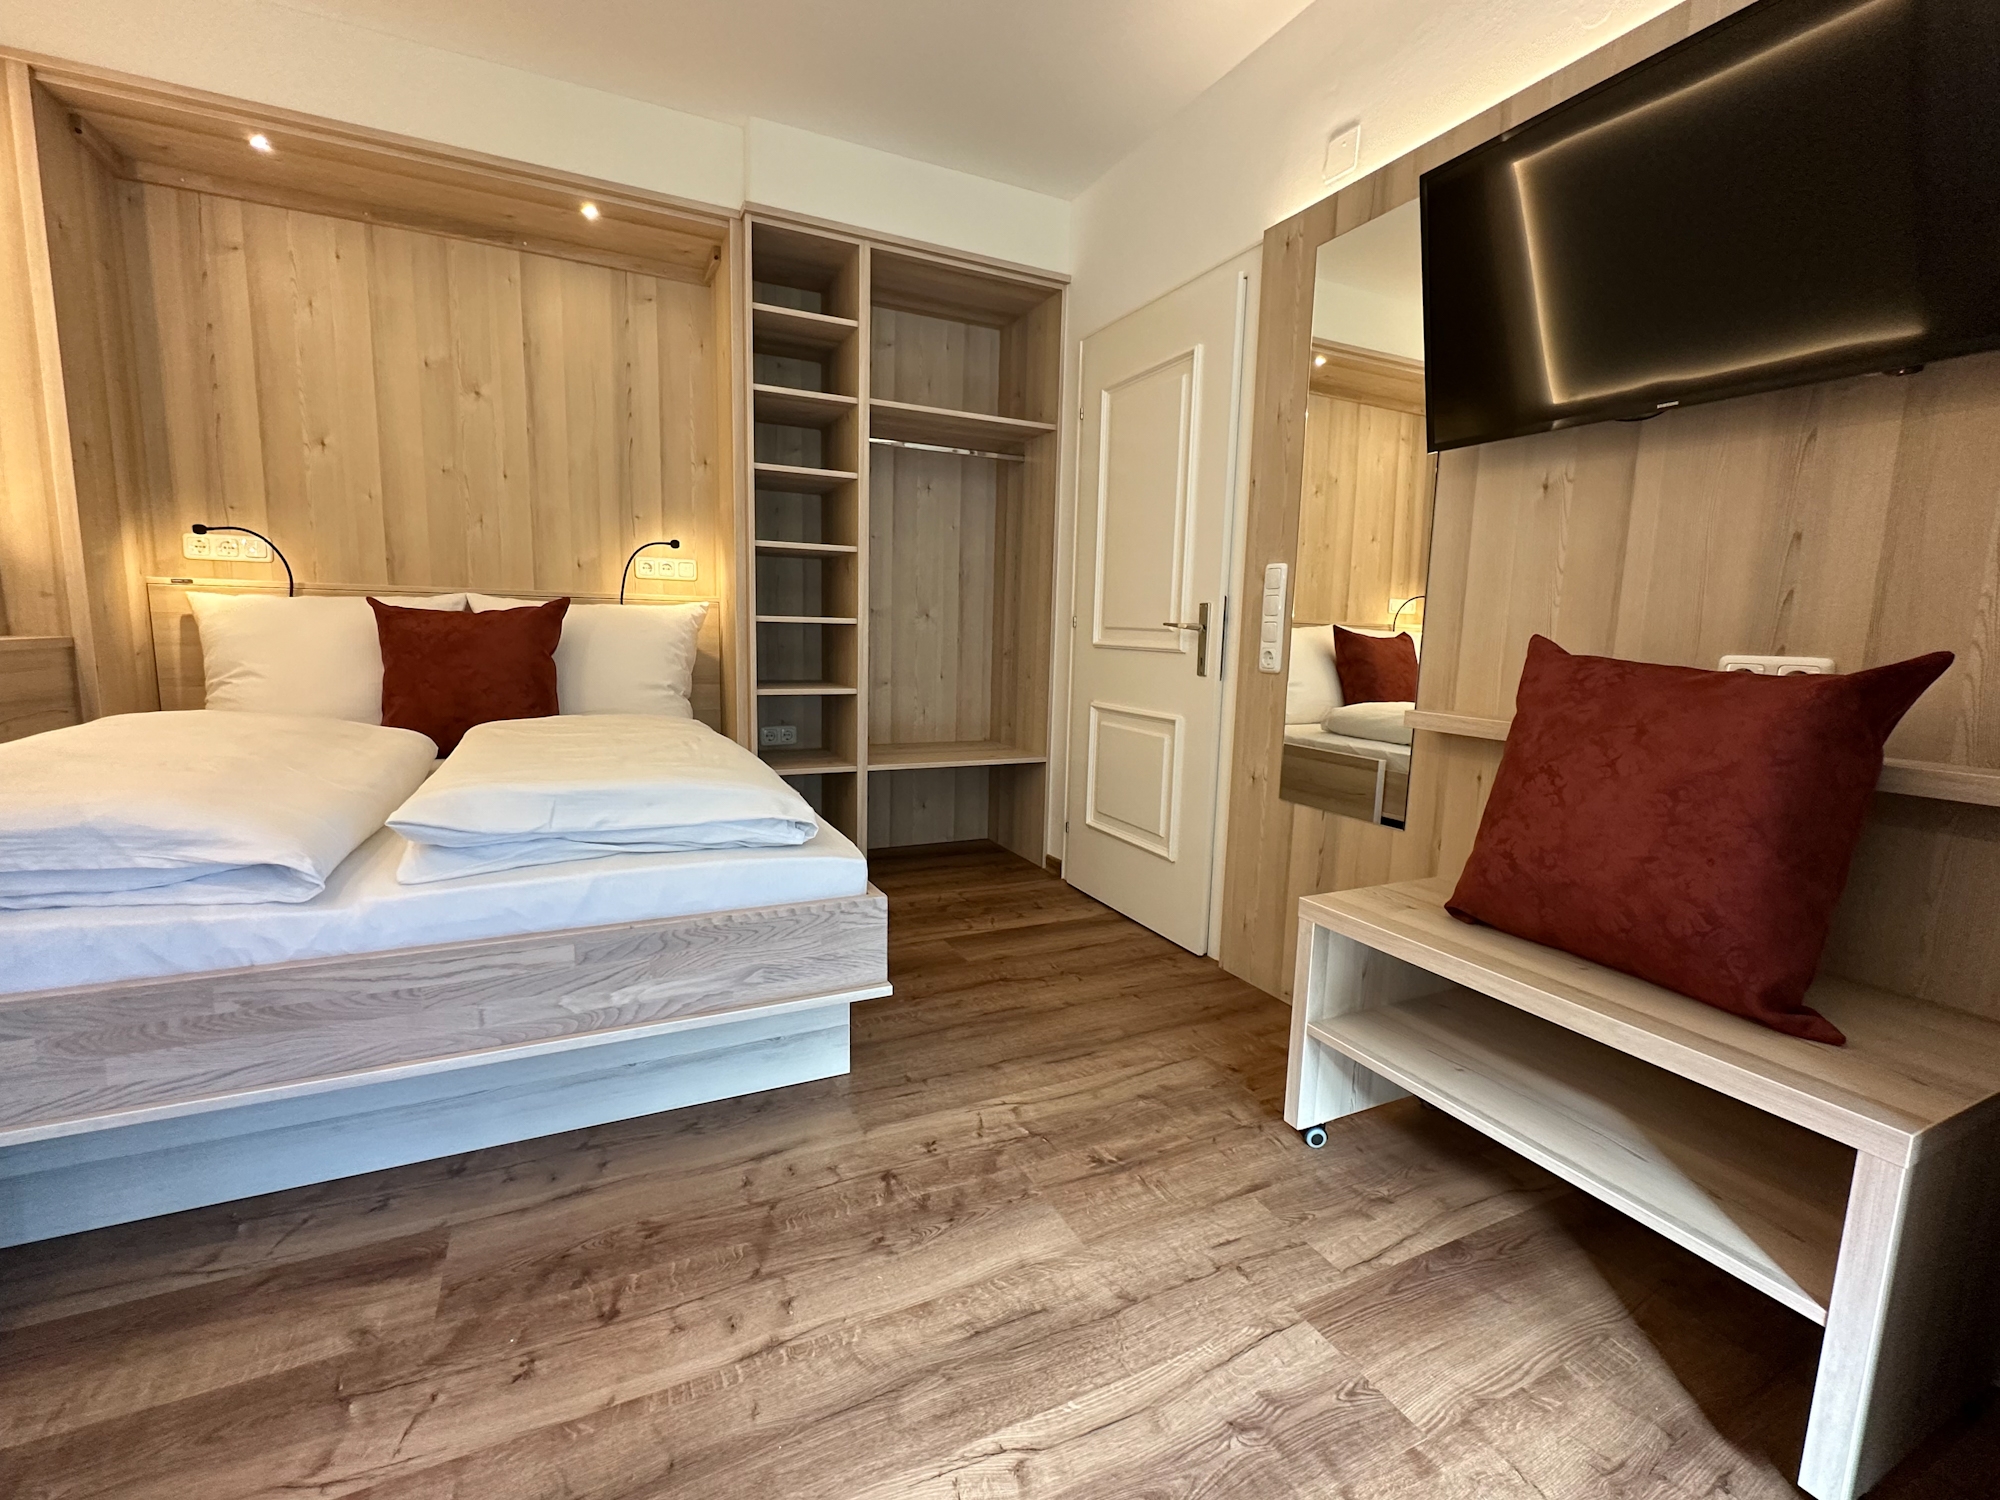 Appartementhaus Zillertal: Ferienwohnung Nr. 1 für 4 Personen - ausklappbares Doppelbett im Wohnbereich